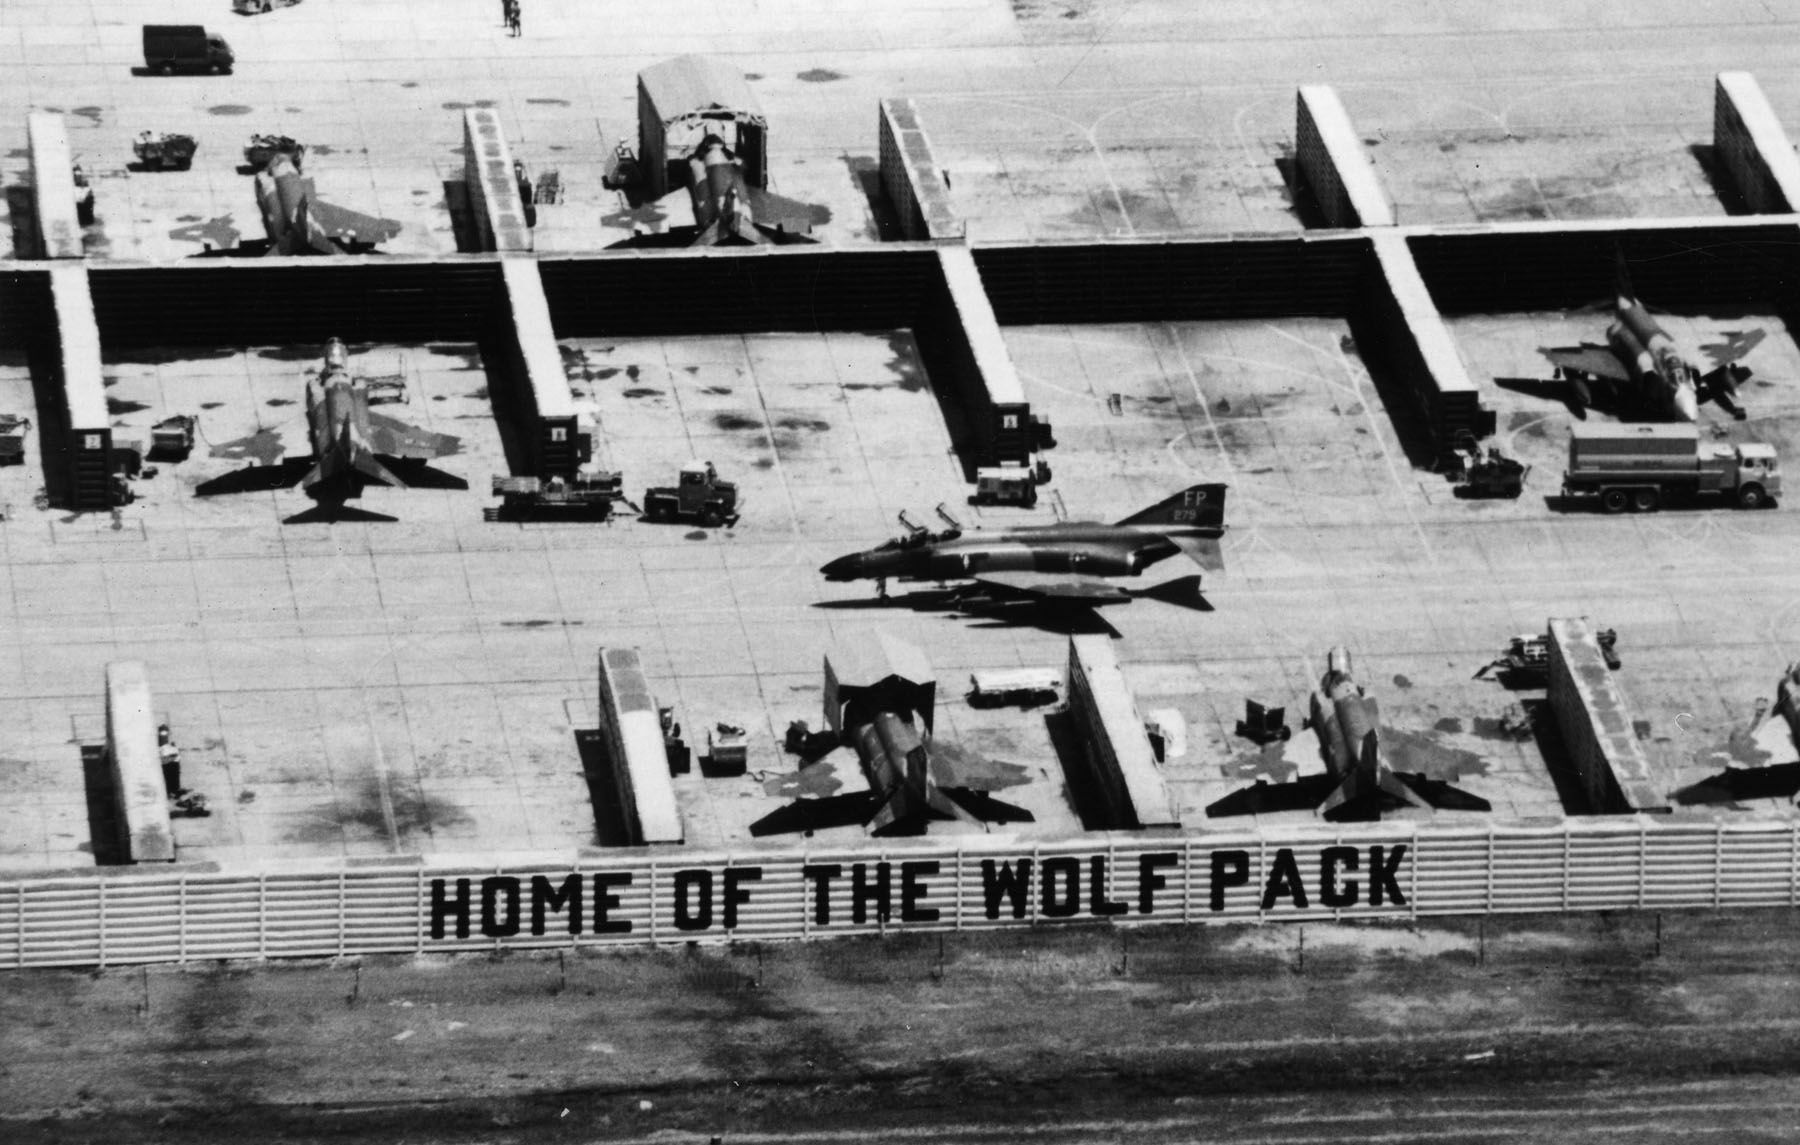 Наряду с базами во Вьетнаме, защитные капониры "вьетнамского типа" для авиационной техники строились американцами в тот период и на своих базах в сопредельных странах. Здесь истребители McDonnell F-4D Phantom II из состава 8-го тактического истребительного крыла ВВС США в капонирах на авиабазе Удон в Таиланде, 1967 год (с) ВВС США